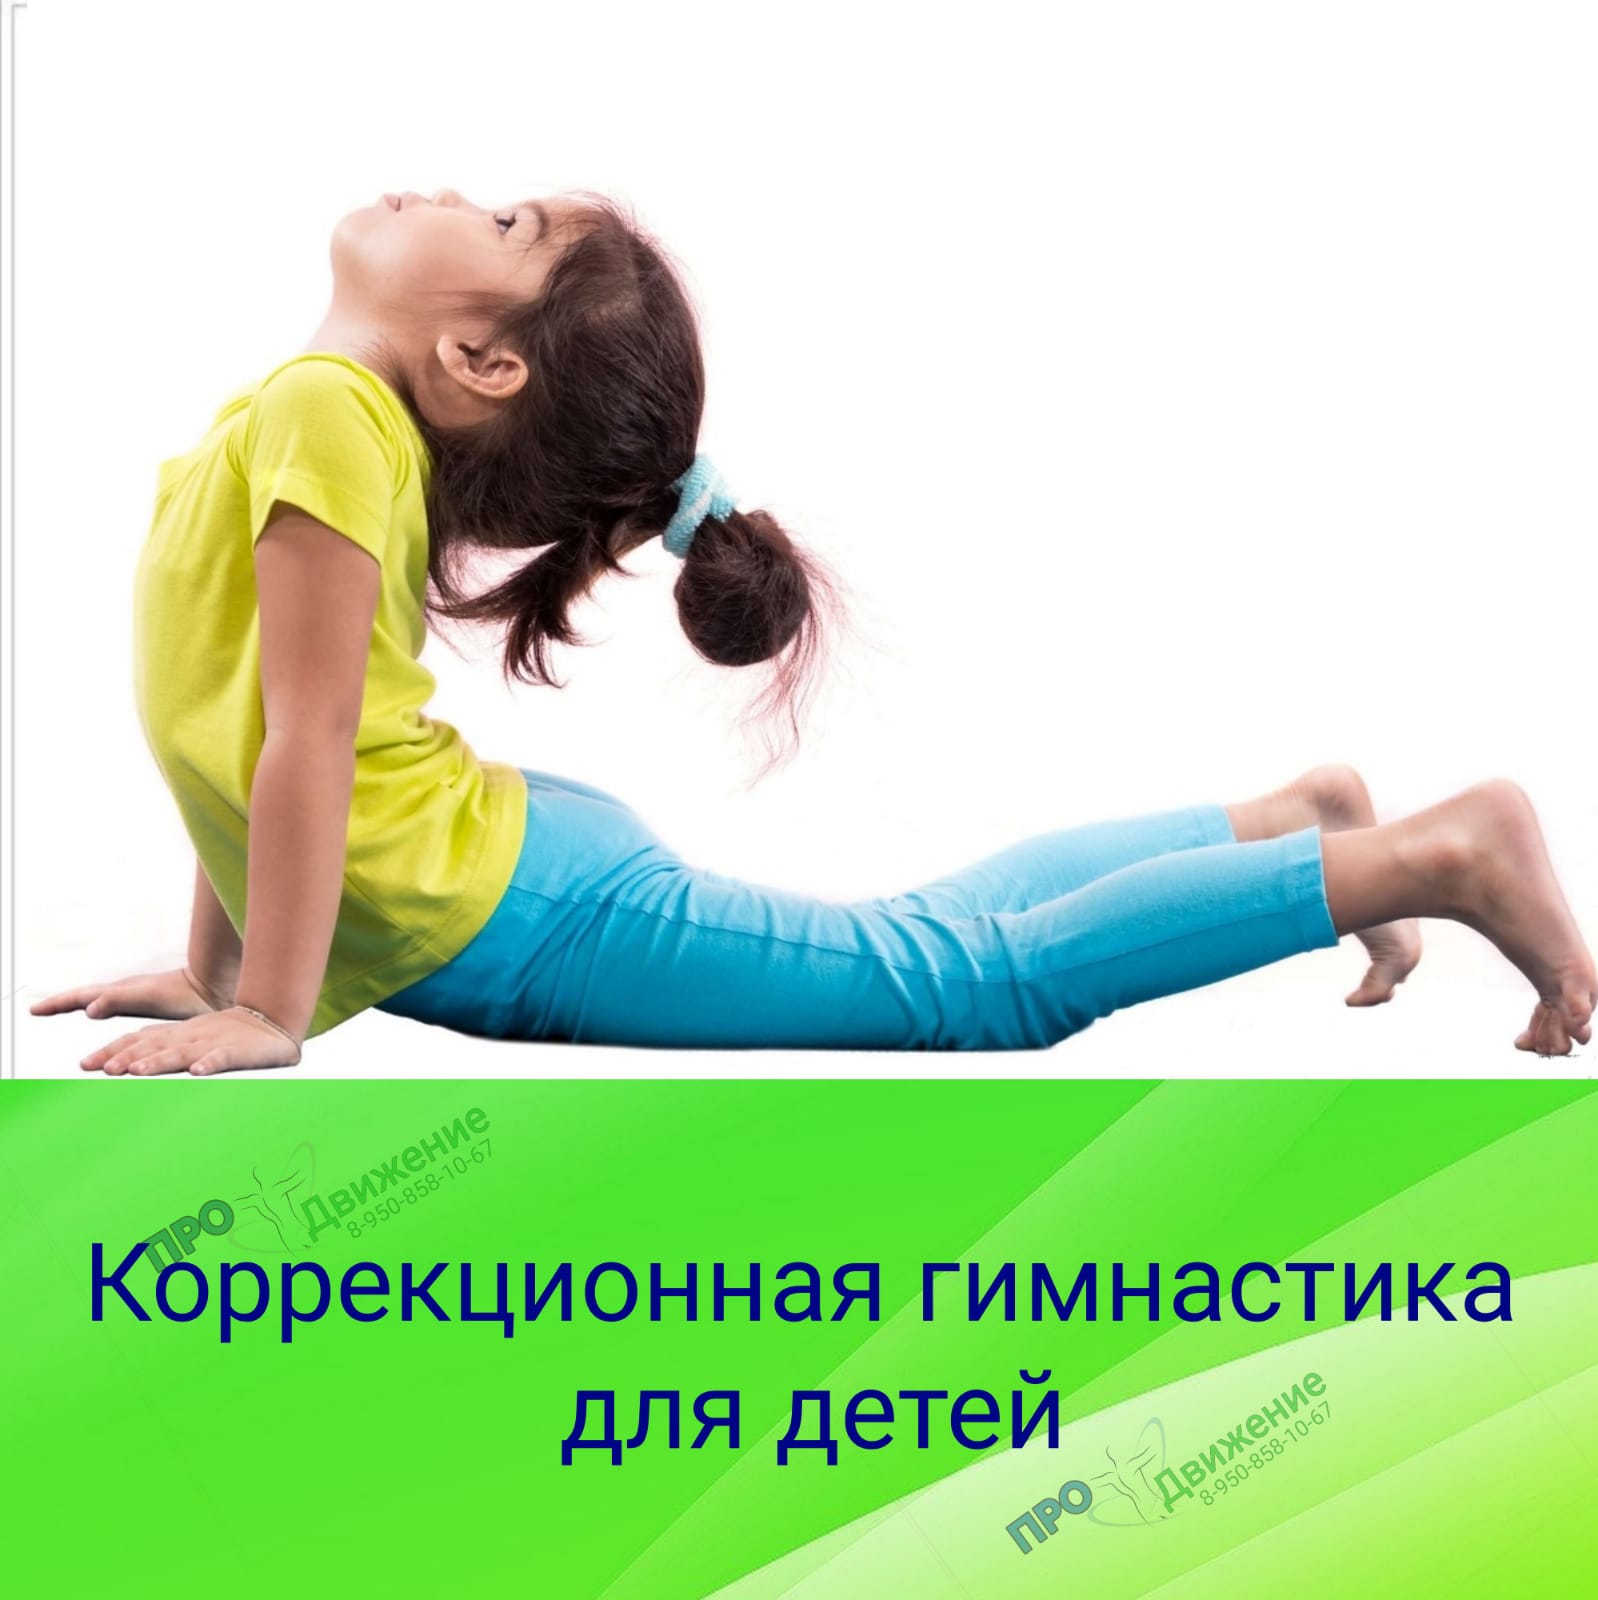 Коррекционная гимнастика для детей в Таганроге